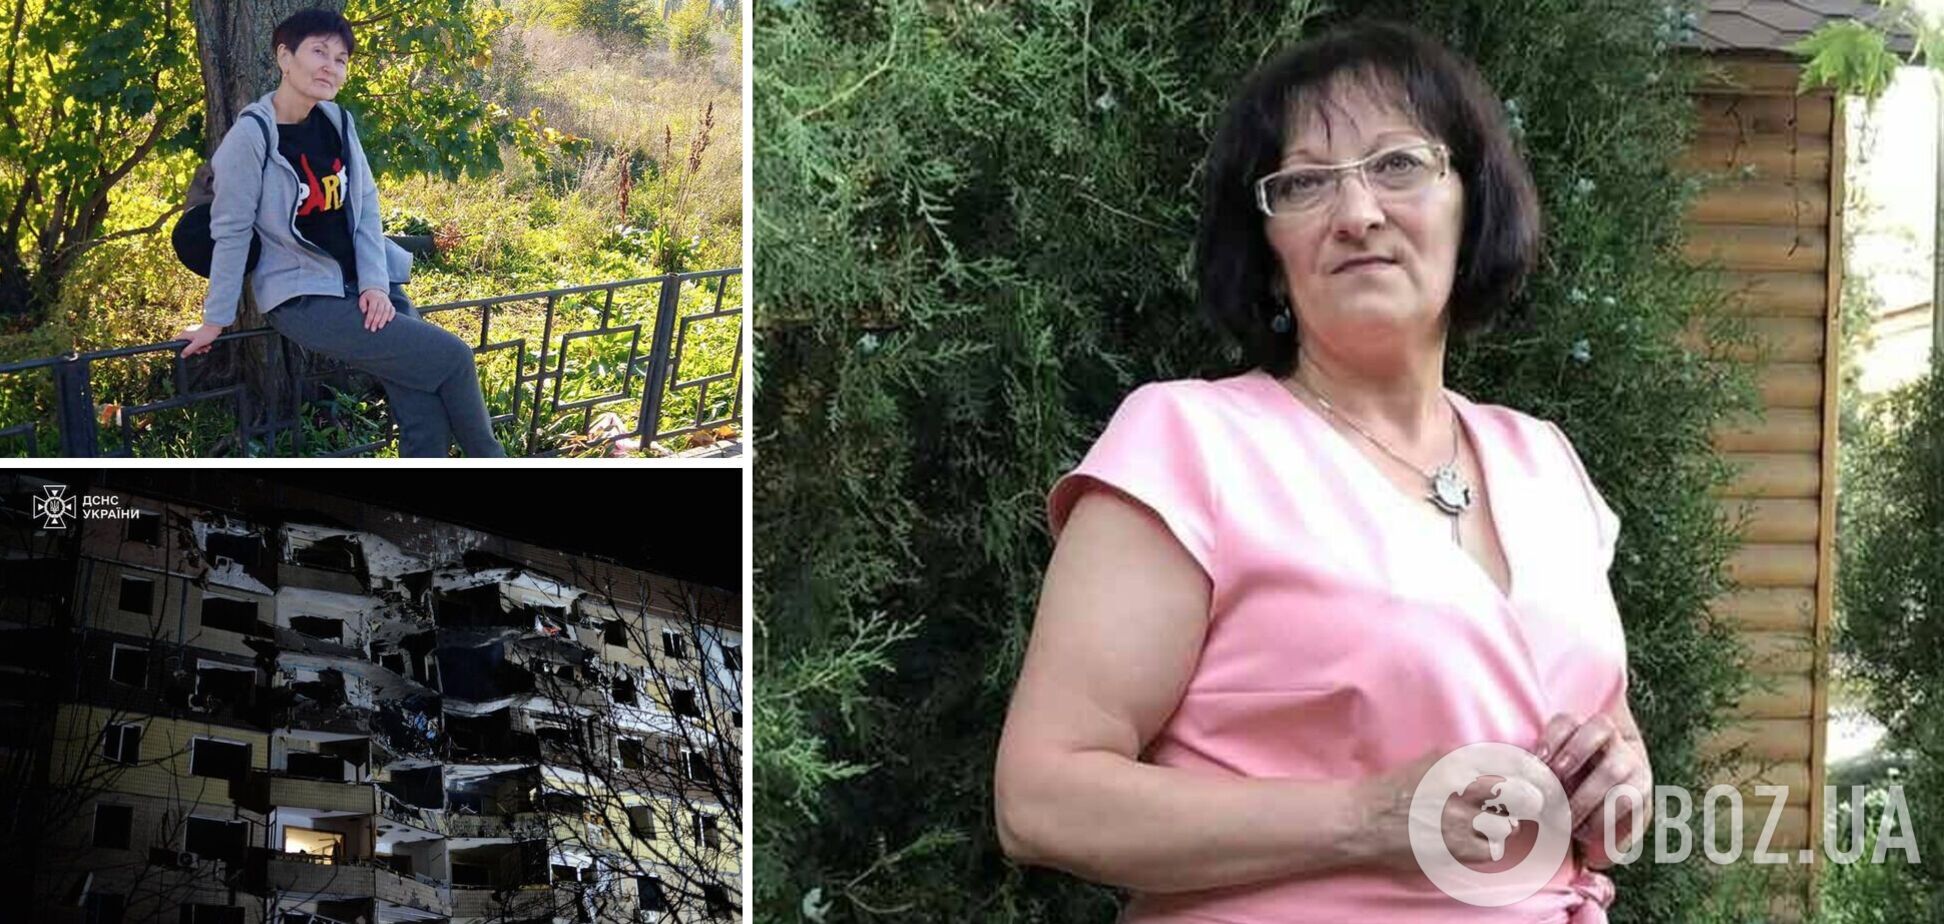 Закрыла собой подругу: в Кривом Роге российская ракета убила многодетную мать, которая заботилась о соседях и животных